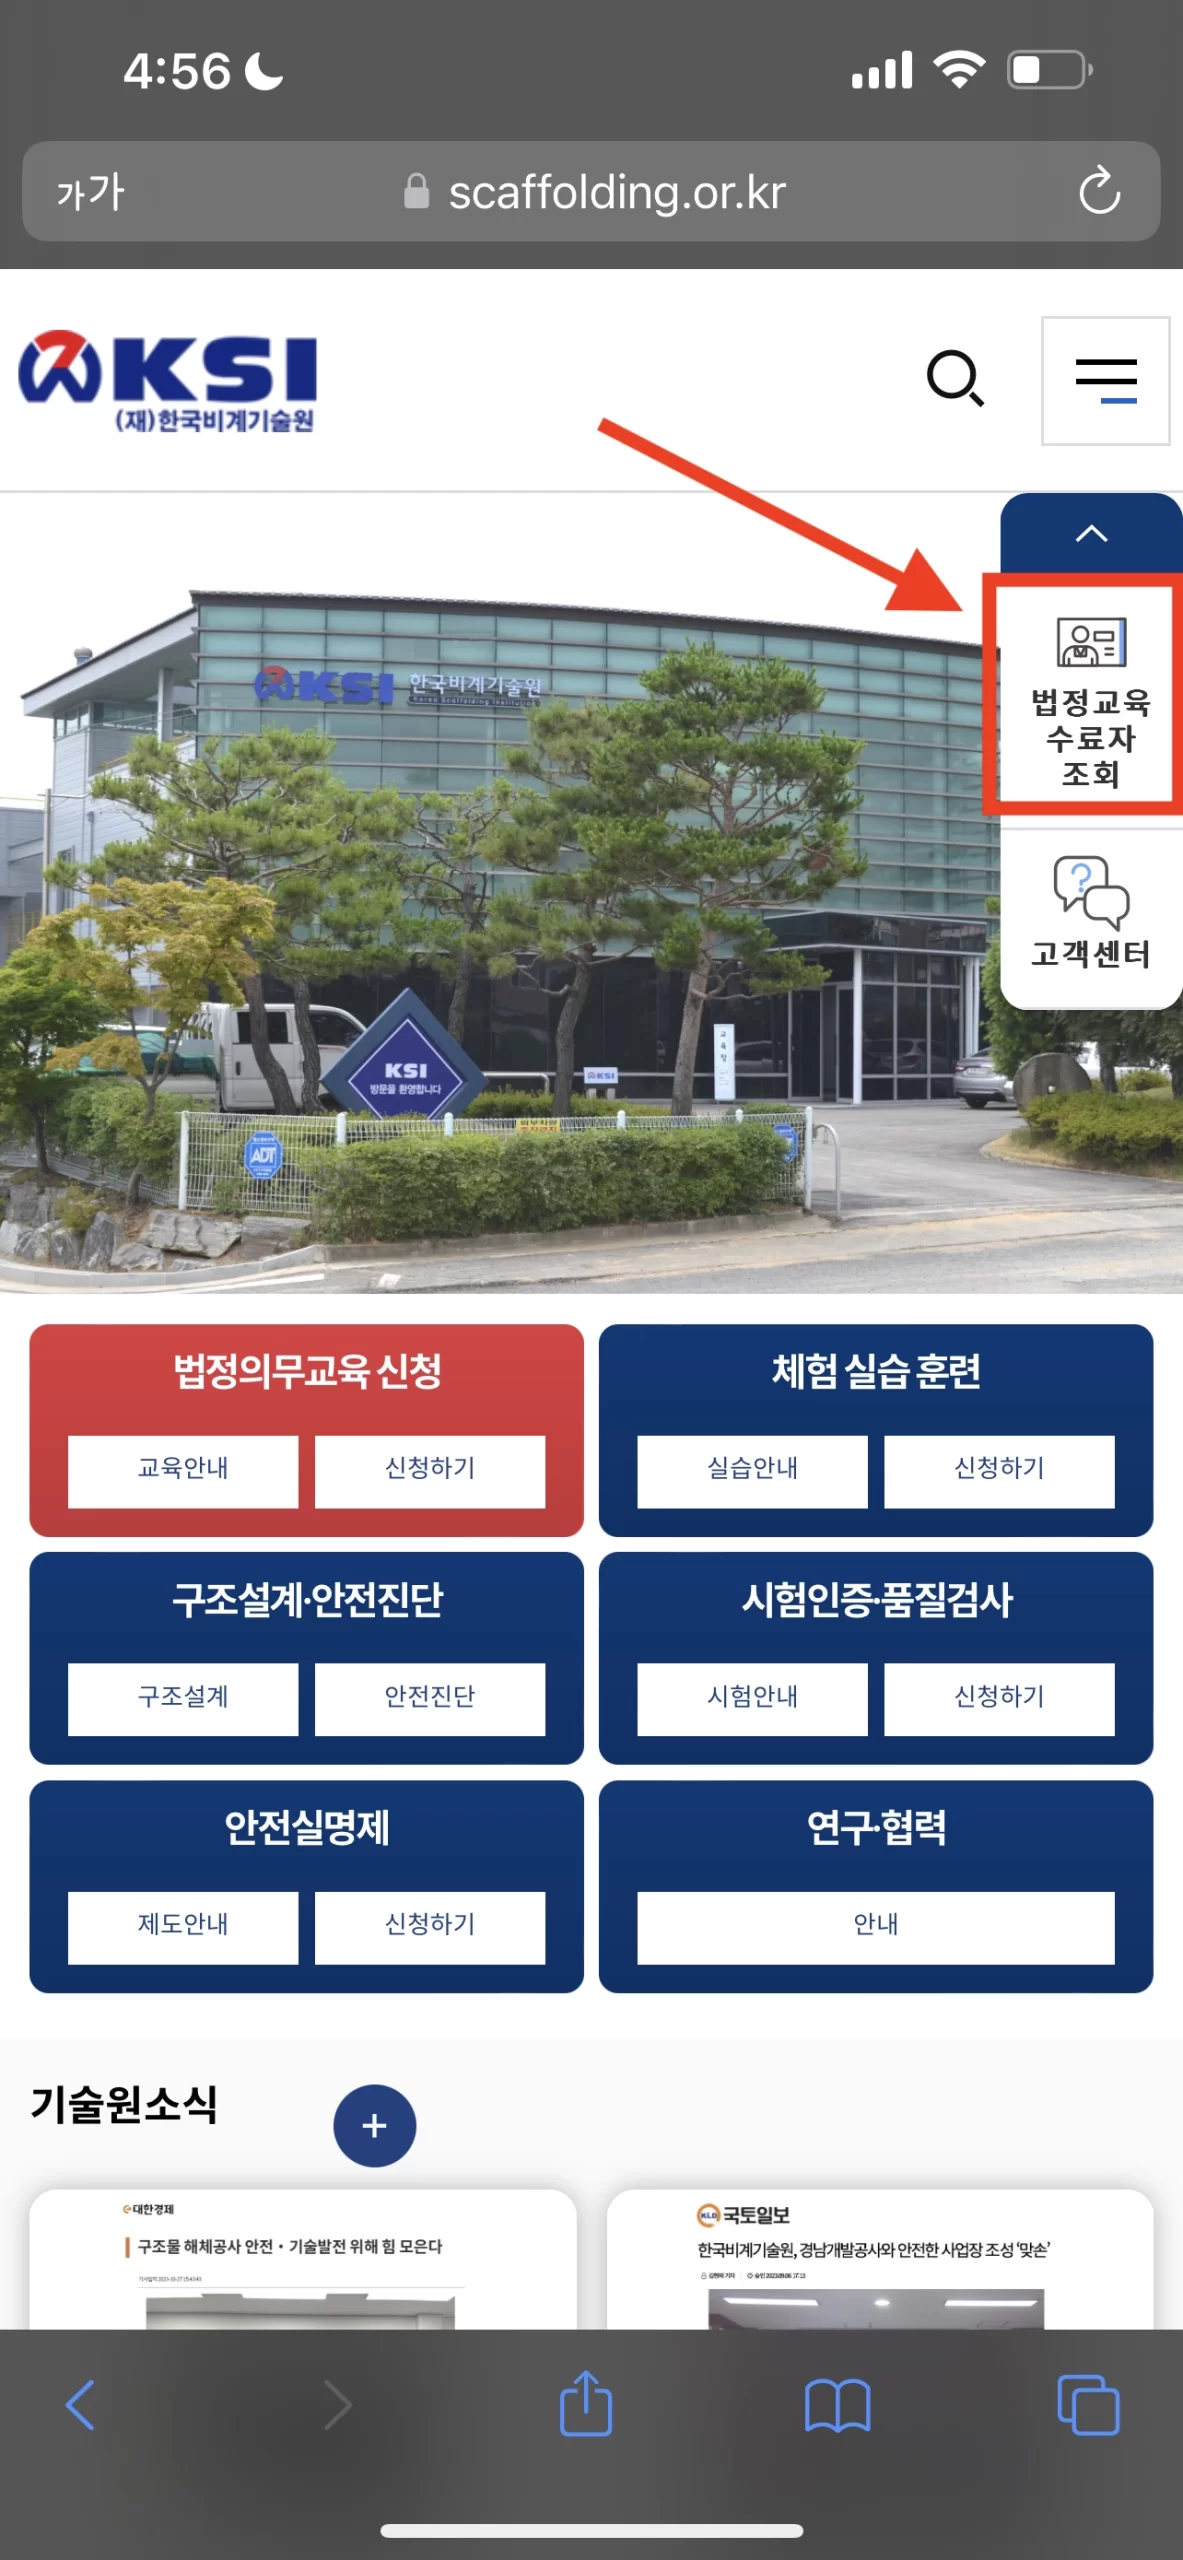 한국비계기술원 홈페이지 오른쪽 메뉴에 나타나는 법정교육 수료자 조회를 클릭합니다.